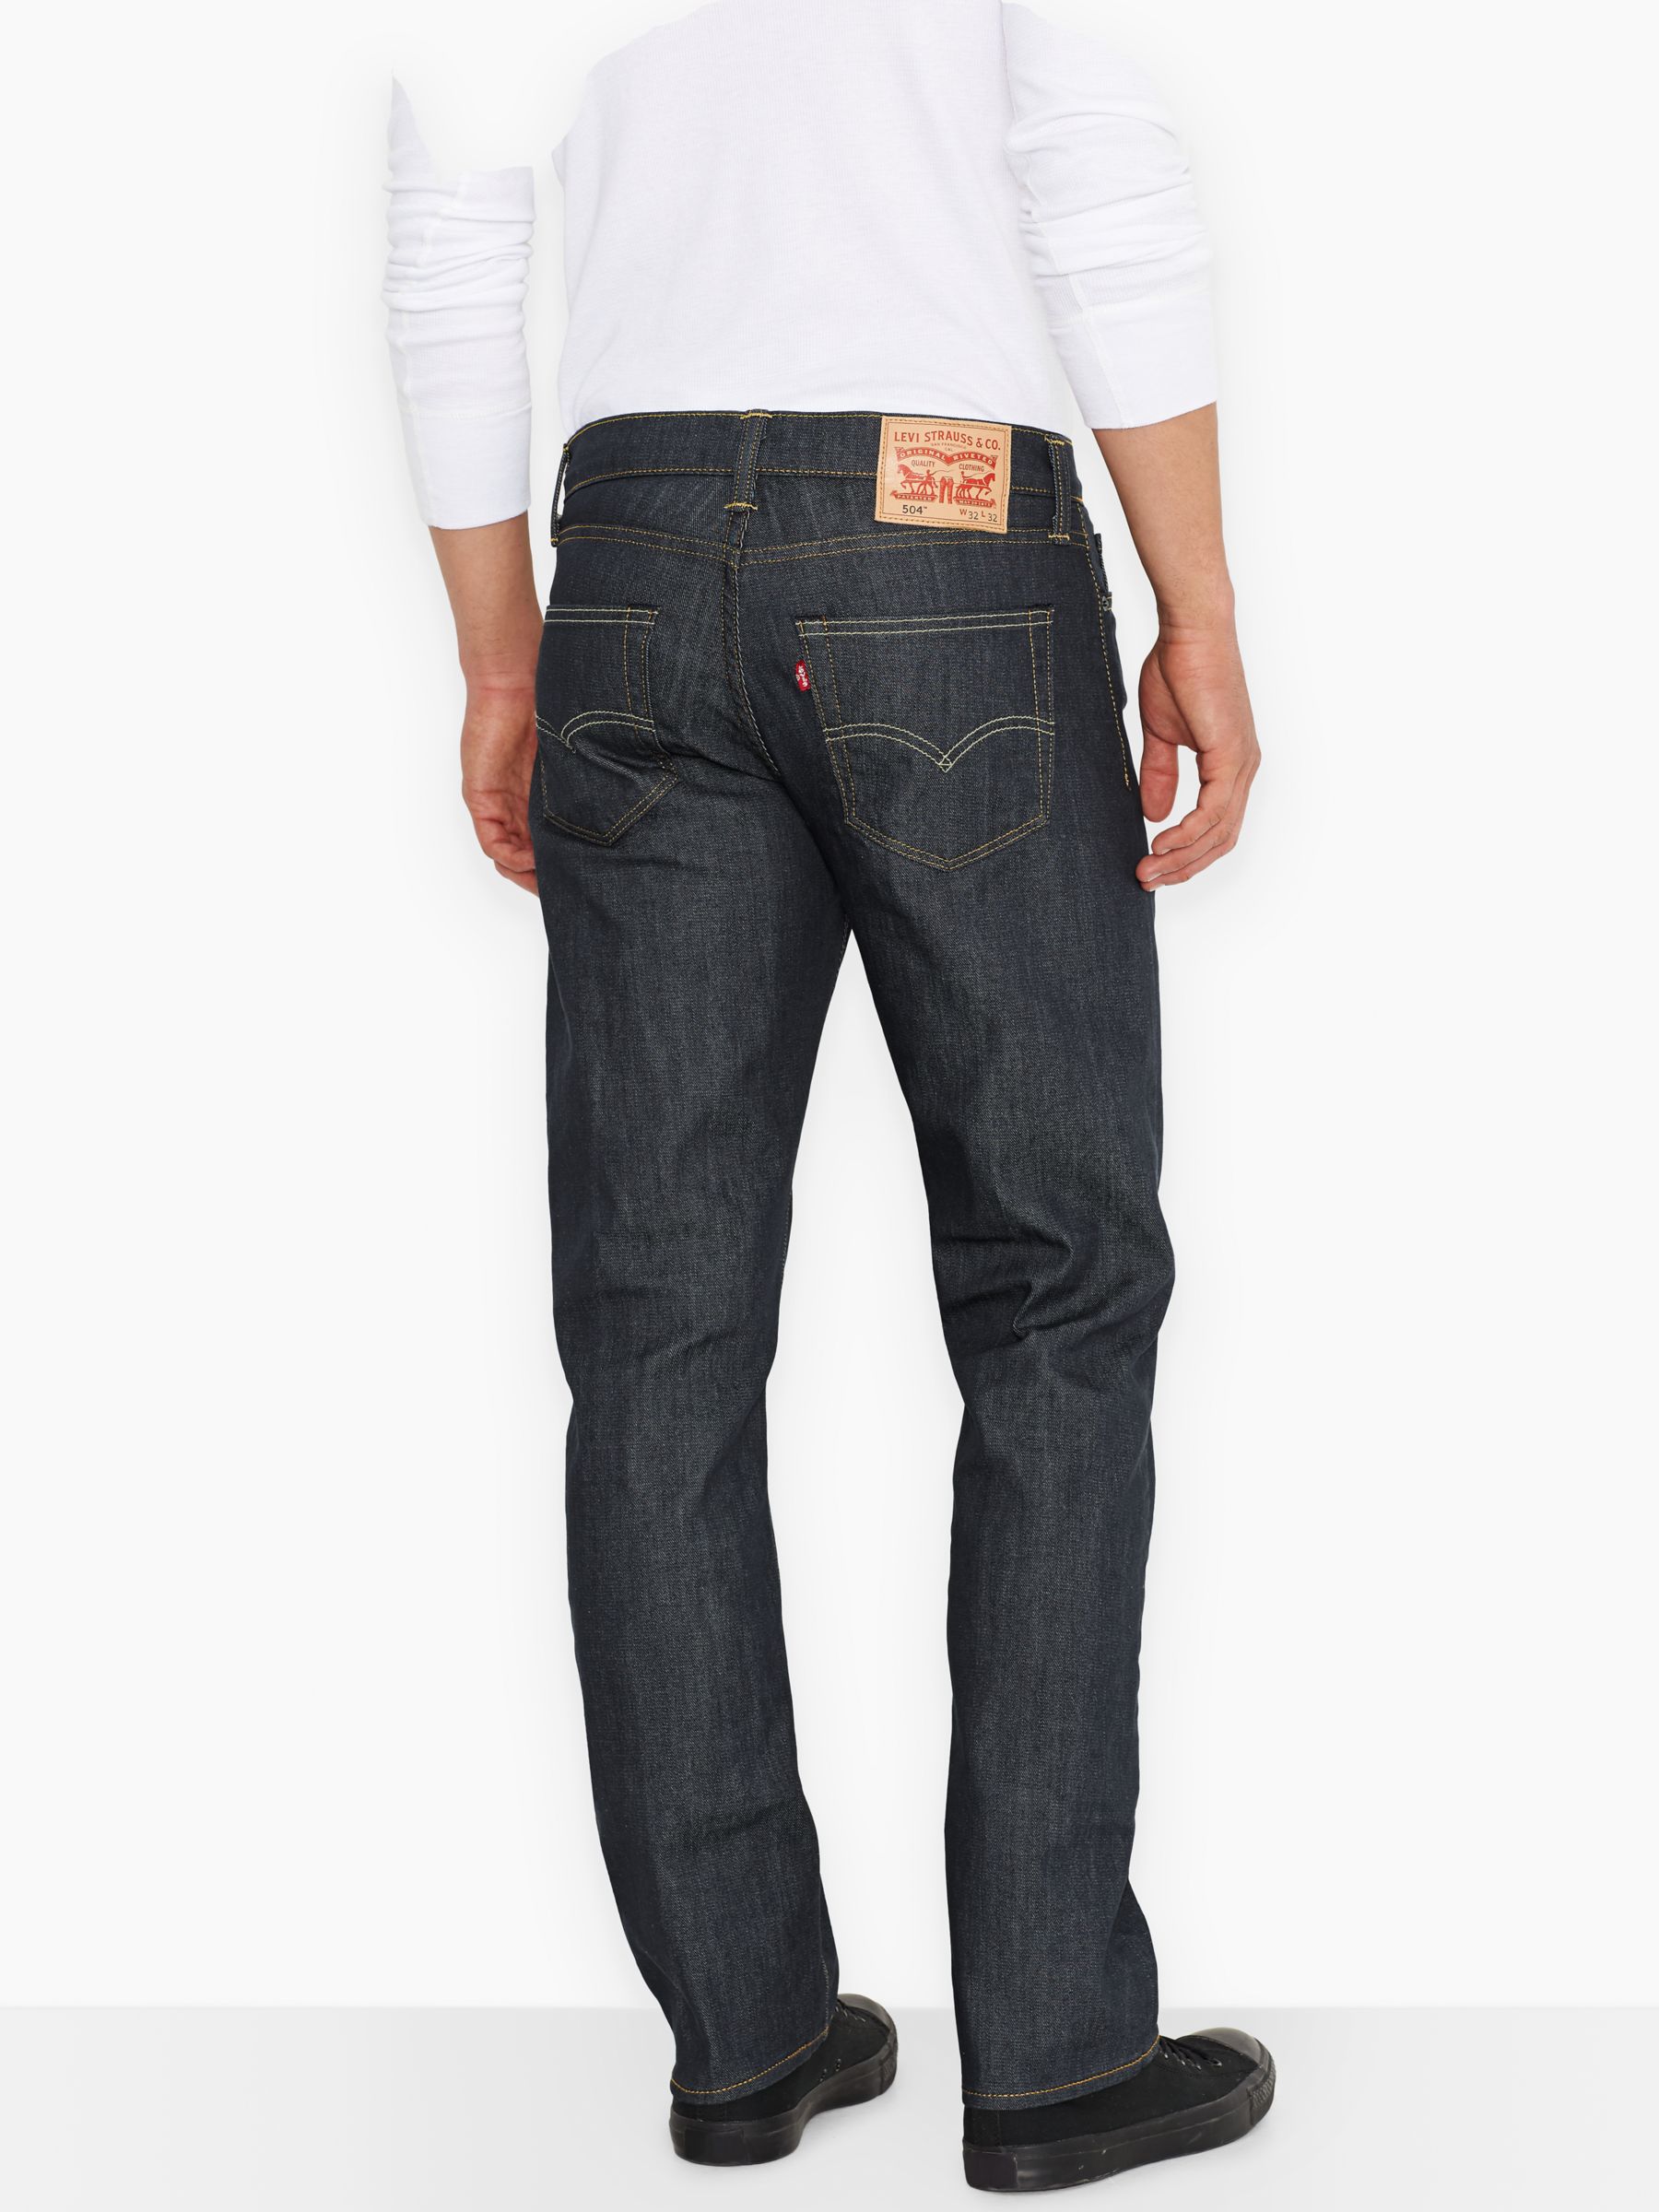 levis 504 jeans